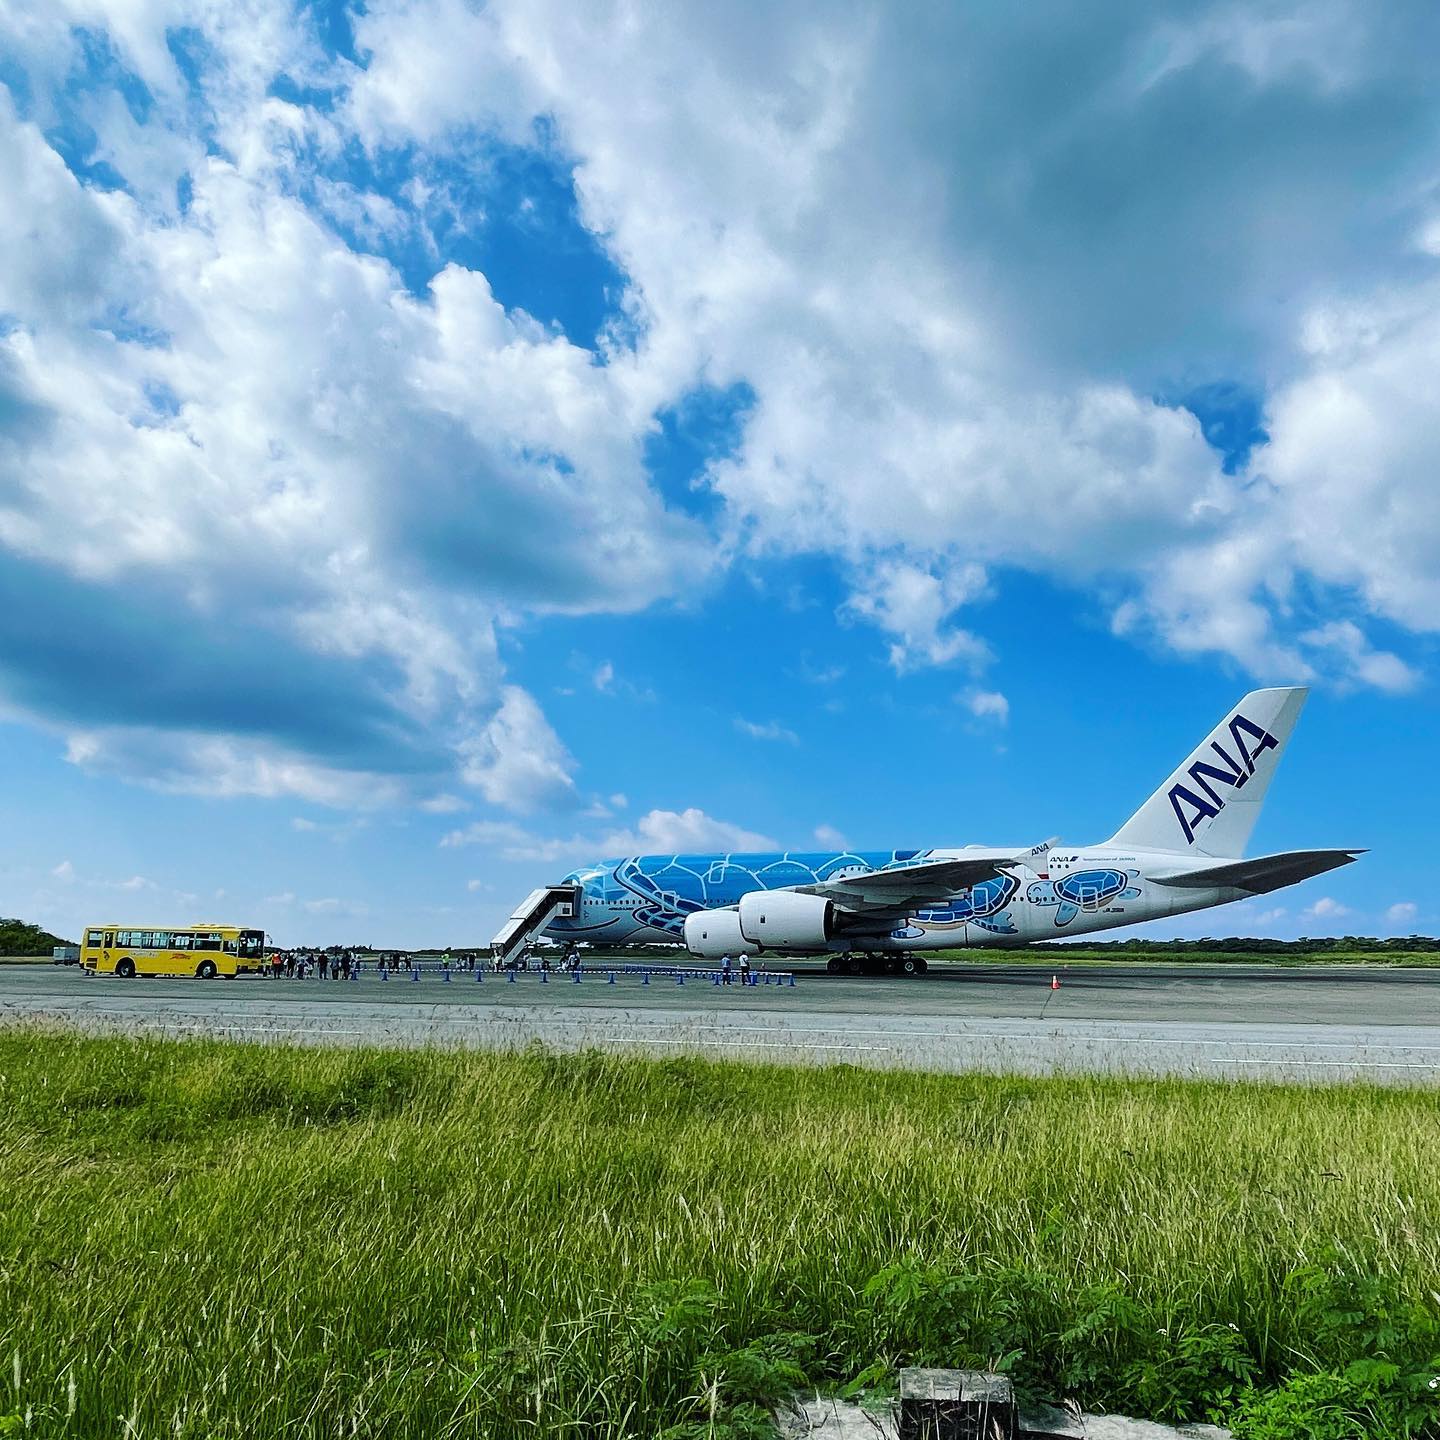 本日もランプバスとして下地島空港内で活躍中🚌
A380フライングホヌ機内見学ツアーのお客様を送迎しております😊

#宮古島 #下地島 #下地島空港 #ANA #A380 #フライングホヌ #ランプバス #沖縄 #宮古島旅行